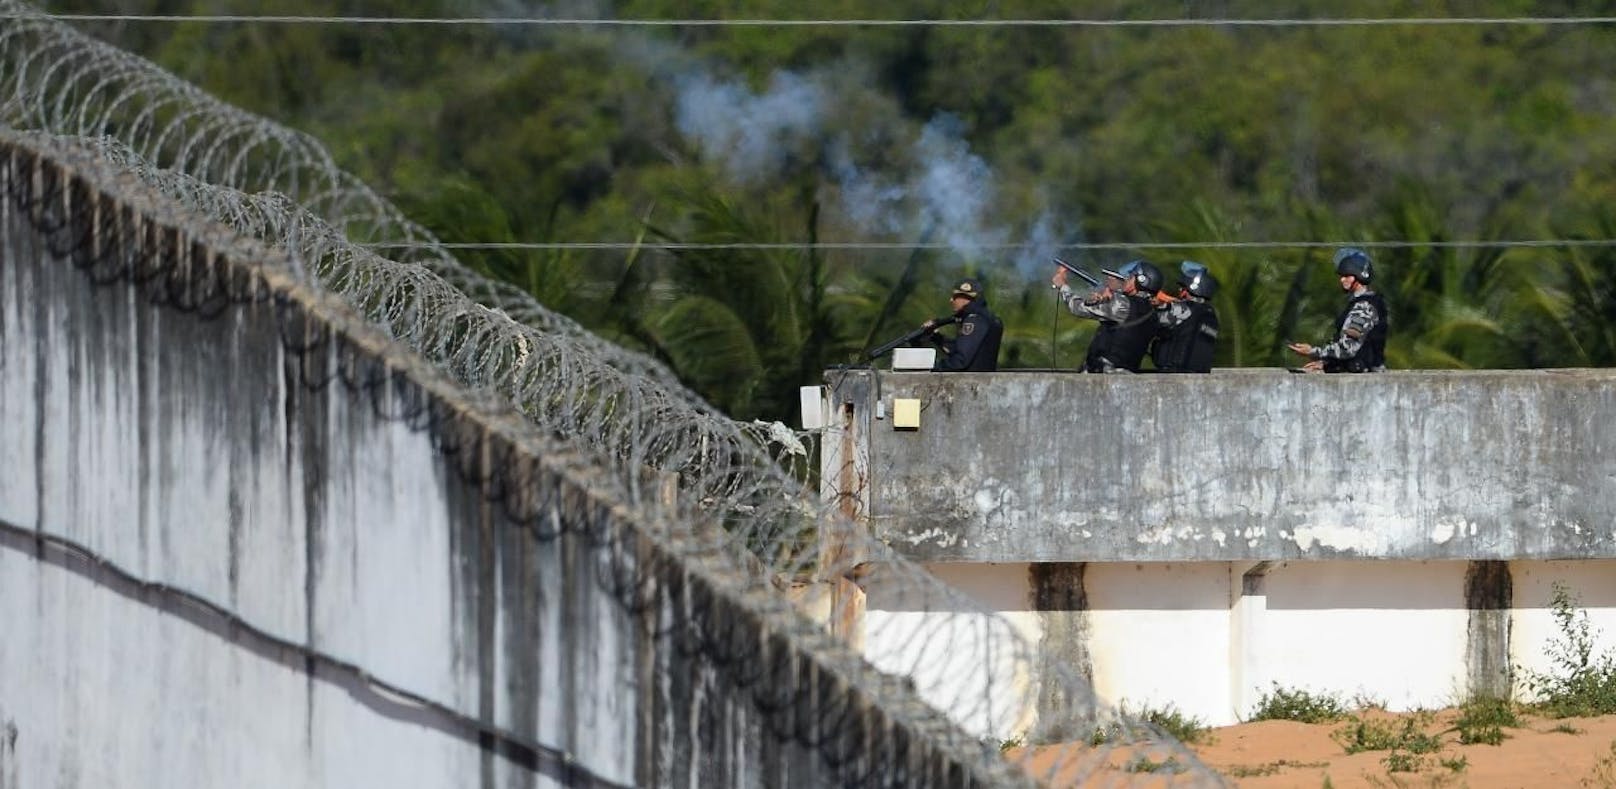 In einem brasilianischen Gefängnis kam es zu einer Auseinadnerstzung zweier Banden: Mindestens 52 Menschen starben.